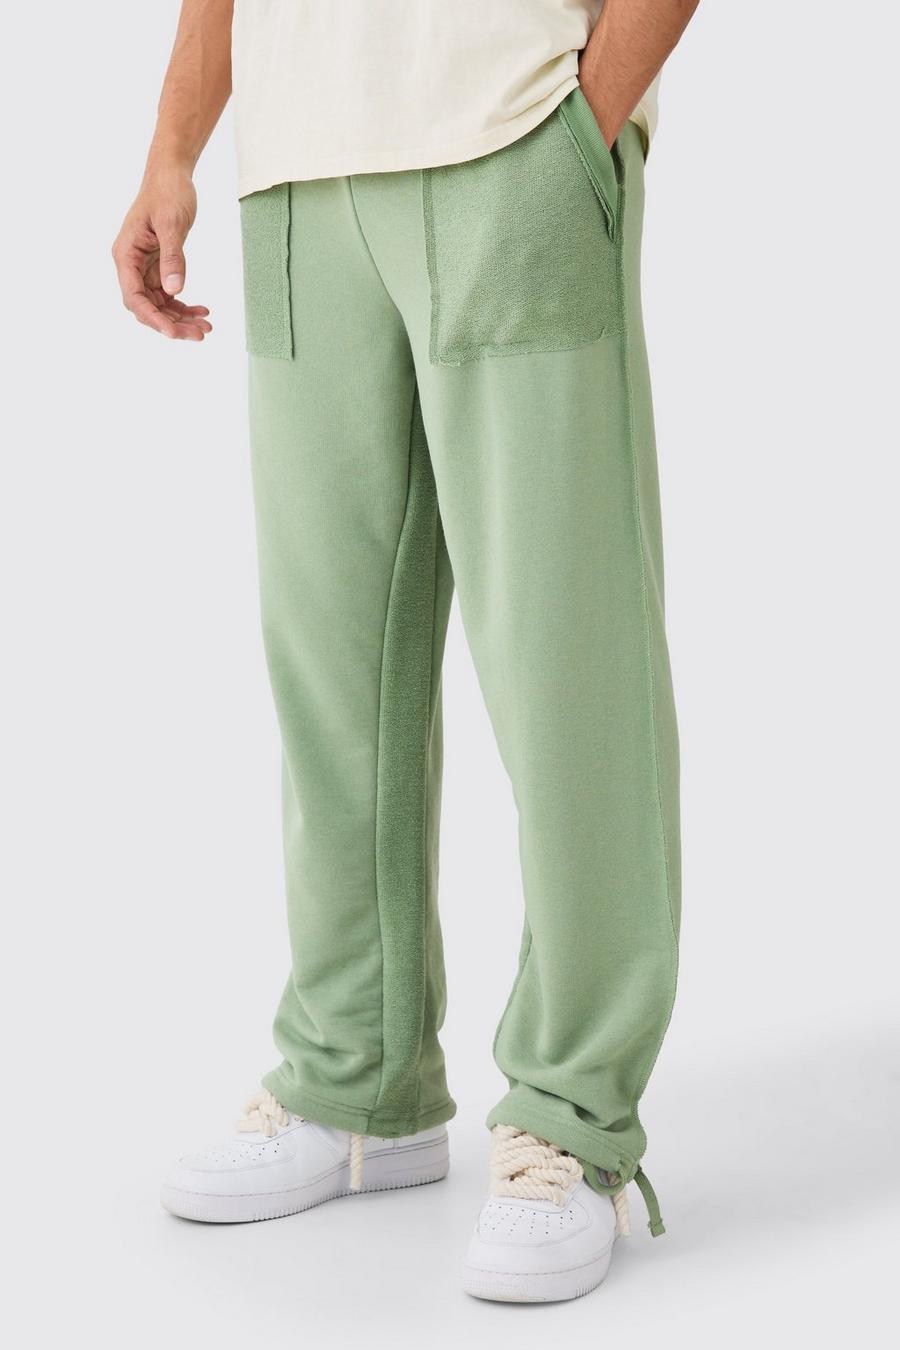 Pantalón deportivo holgado de tela rizo, Khaki